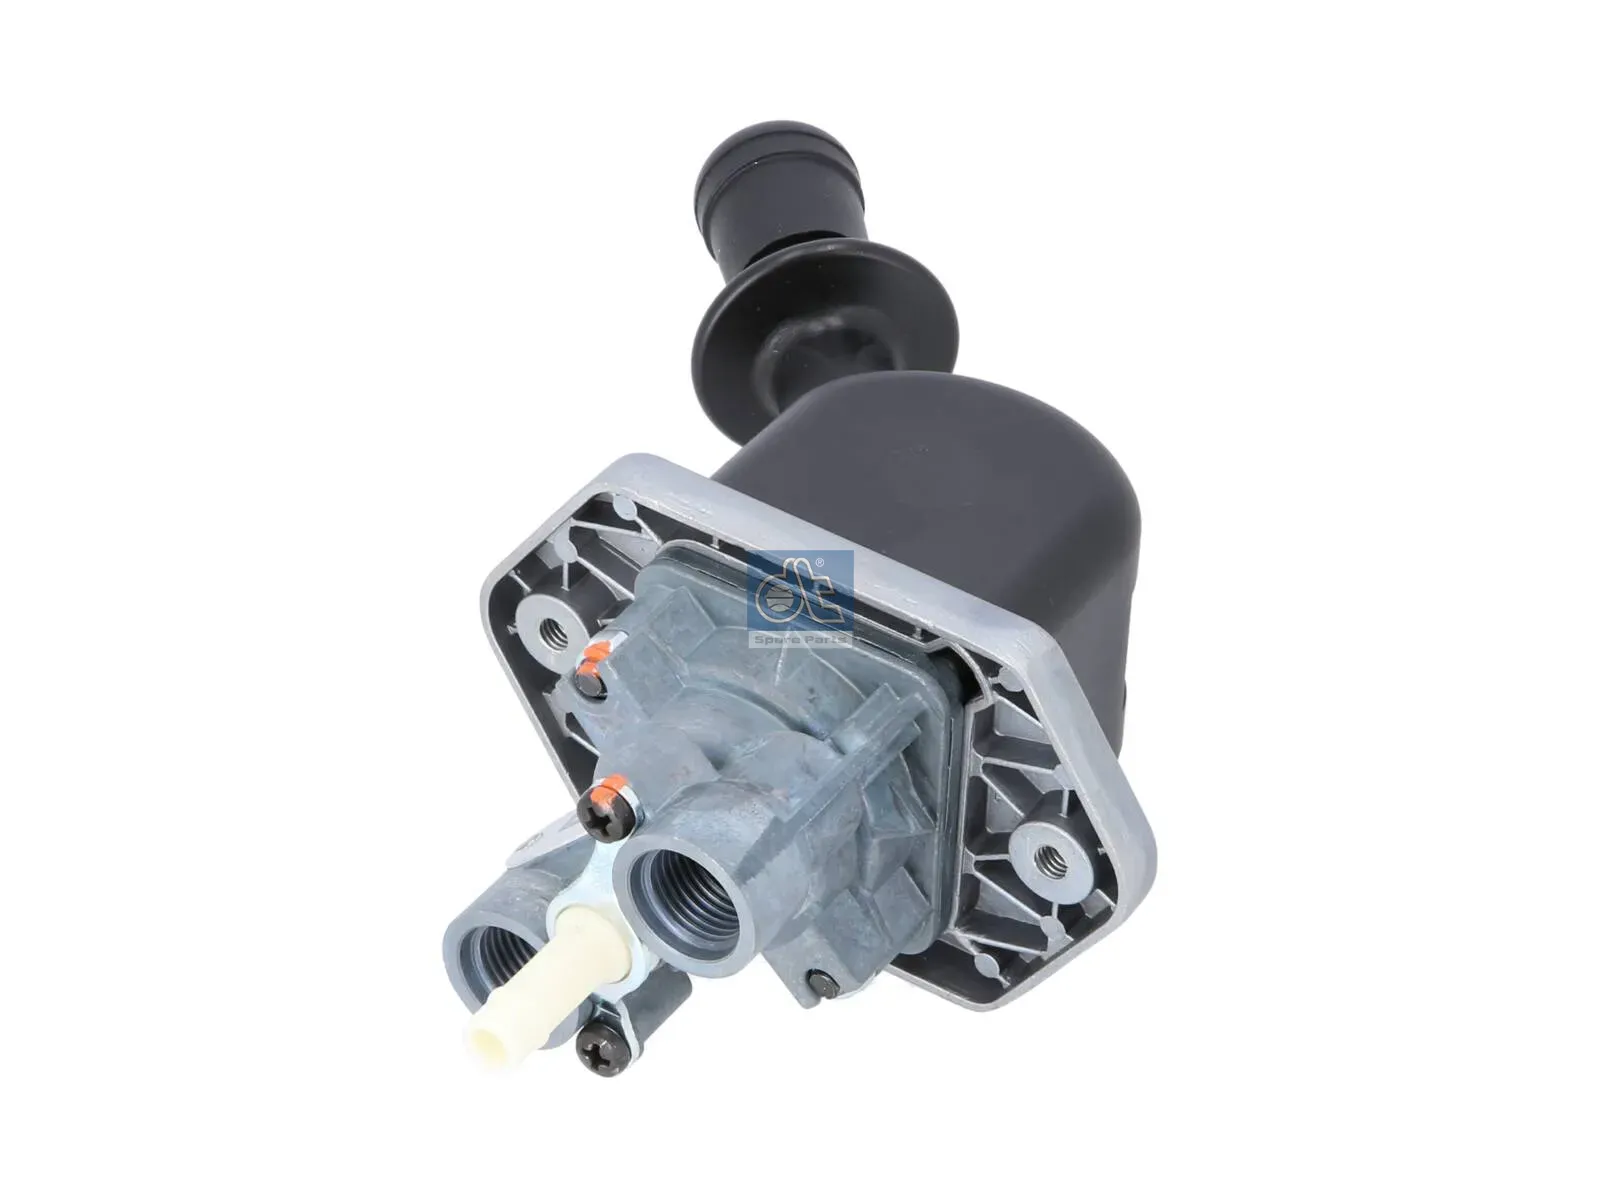 Hand brake valve